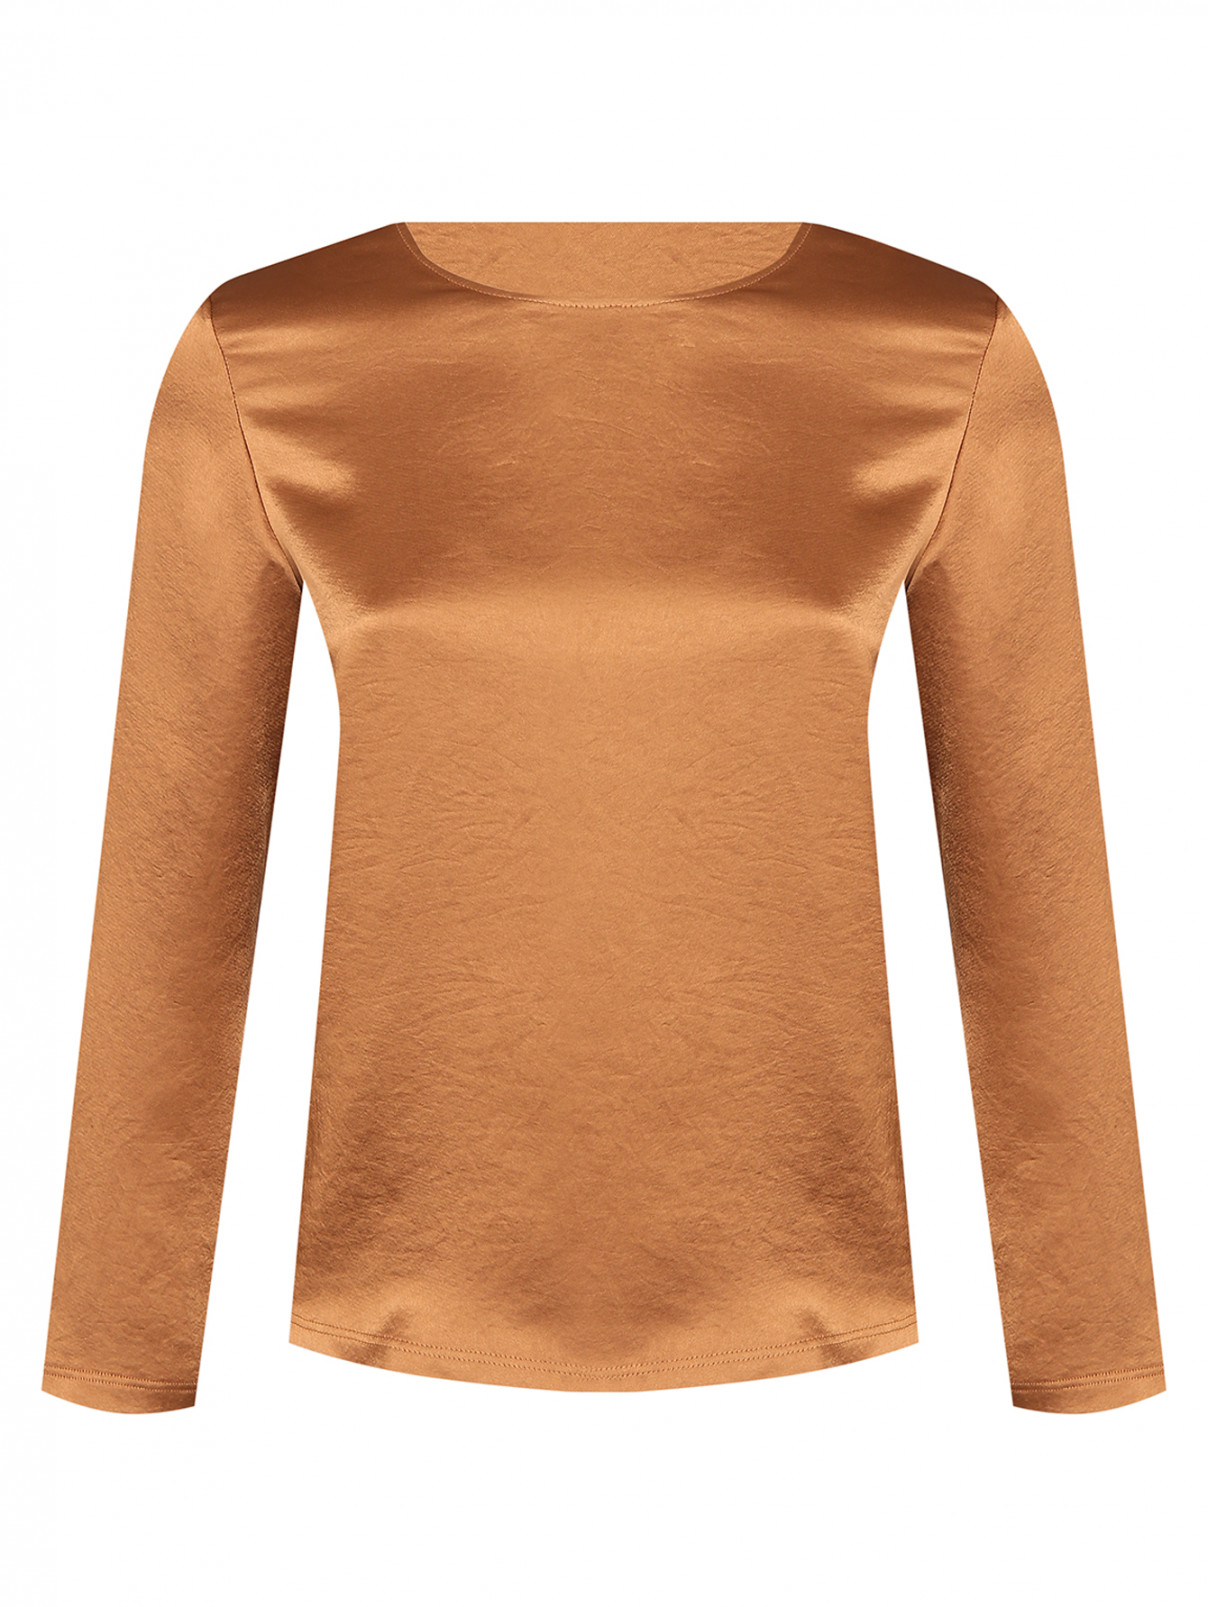 Комбинированная блуза на молнии Weekend Max Mara  –  Общий вид  – Цвет:  Коричневый